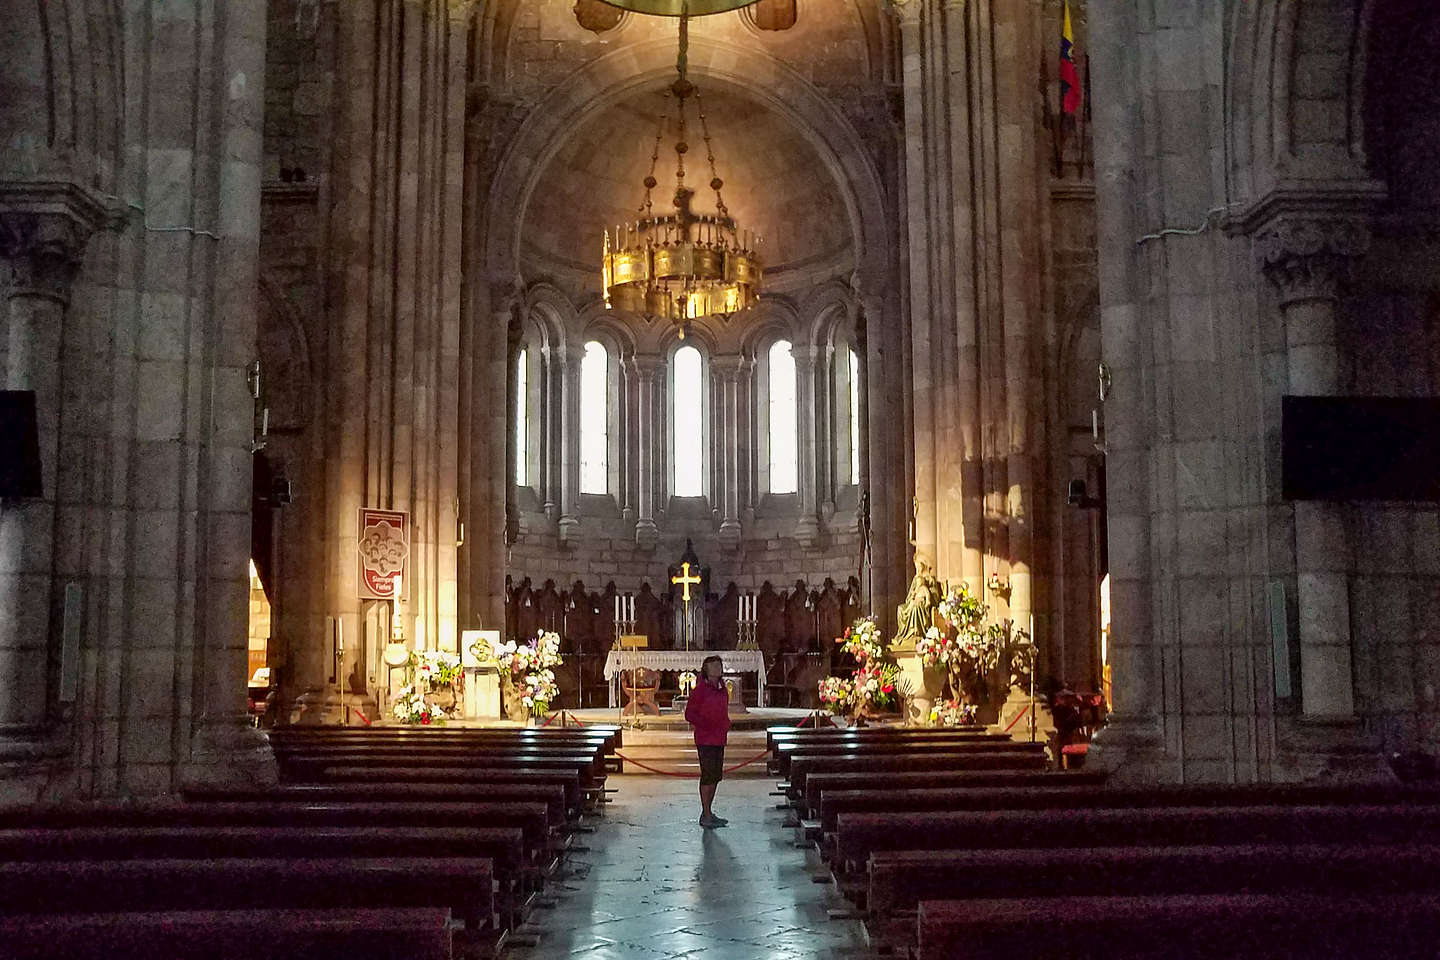 Interior of the Basilica de Covadonga